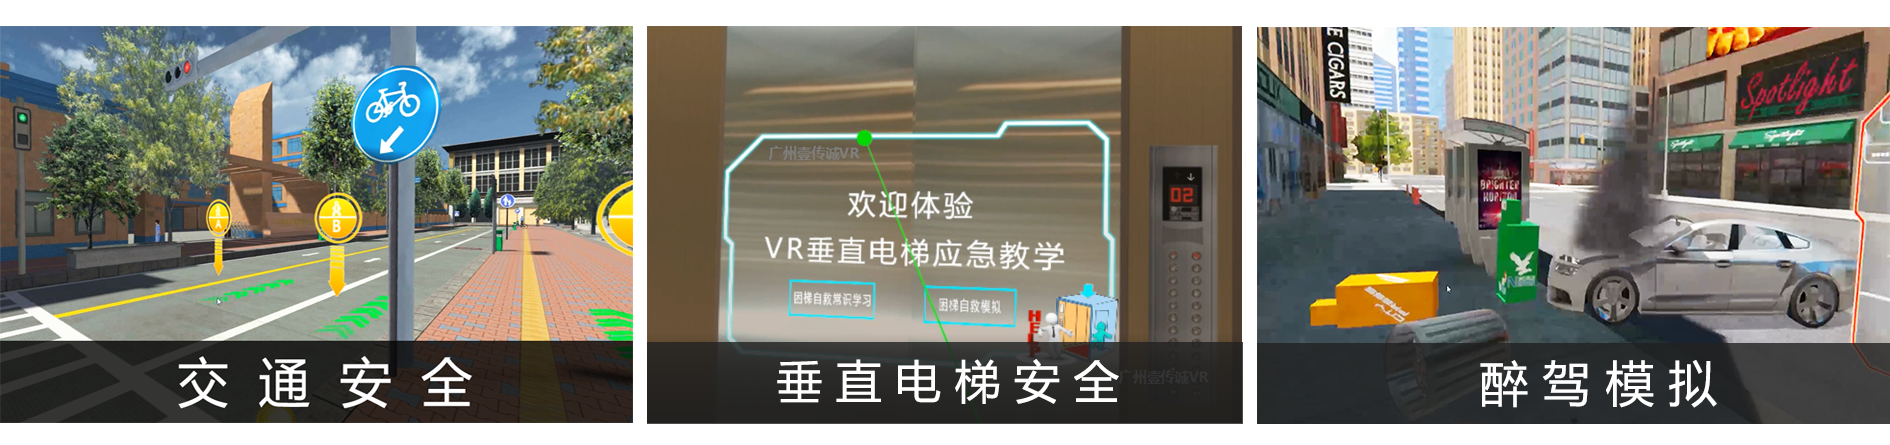 广州壹传诚 VR交通安全 VR垂直电梯安全 VR醉驾体验